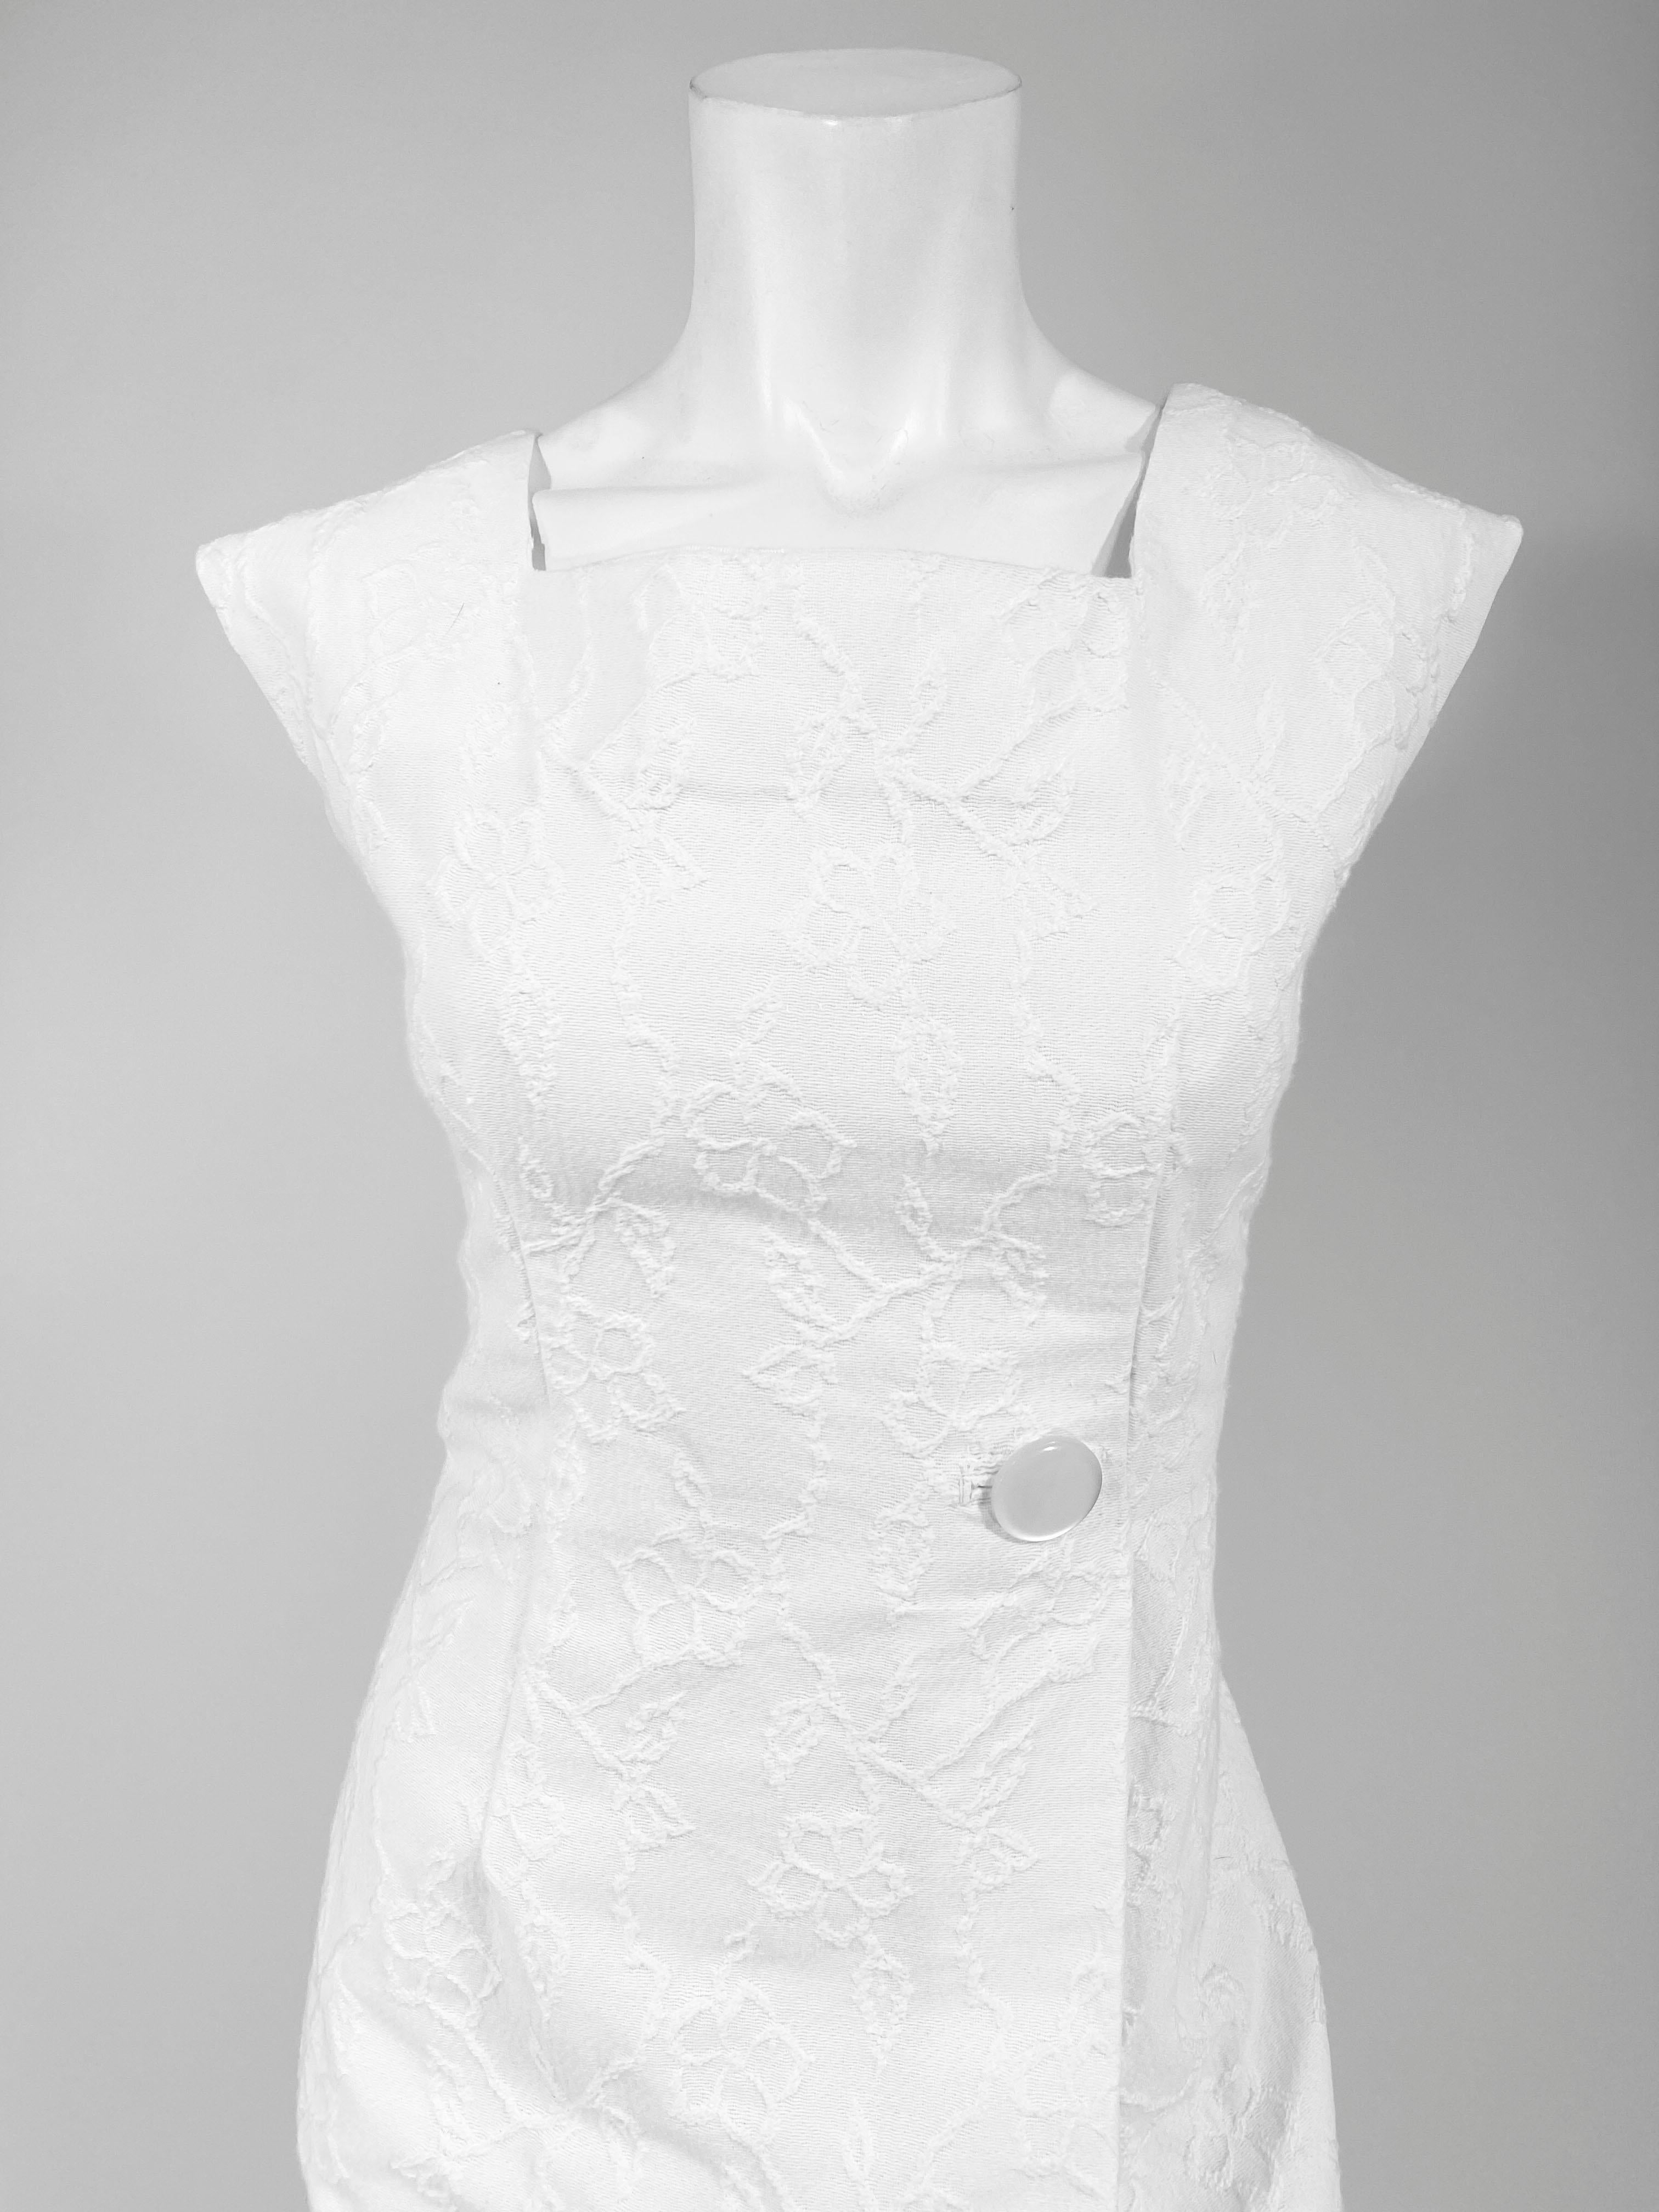 weißes Baumwoll-Jacquard-Sommercocktailkleid aus den 1960er Jahren. Rock und Mieder des Kleides sind mit einer großen, einfachen Falte anstelle einer rückwärtigen Kellerfalte versehen, die mit einem großen Knopf aus Perlmutt verziert ist. Die